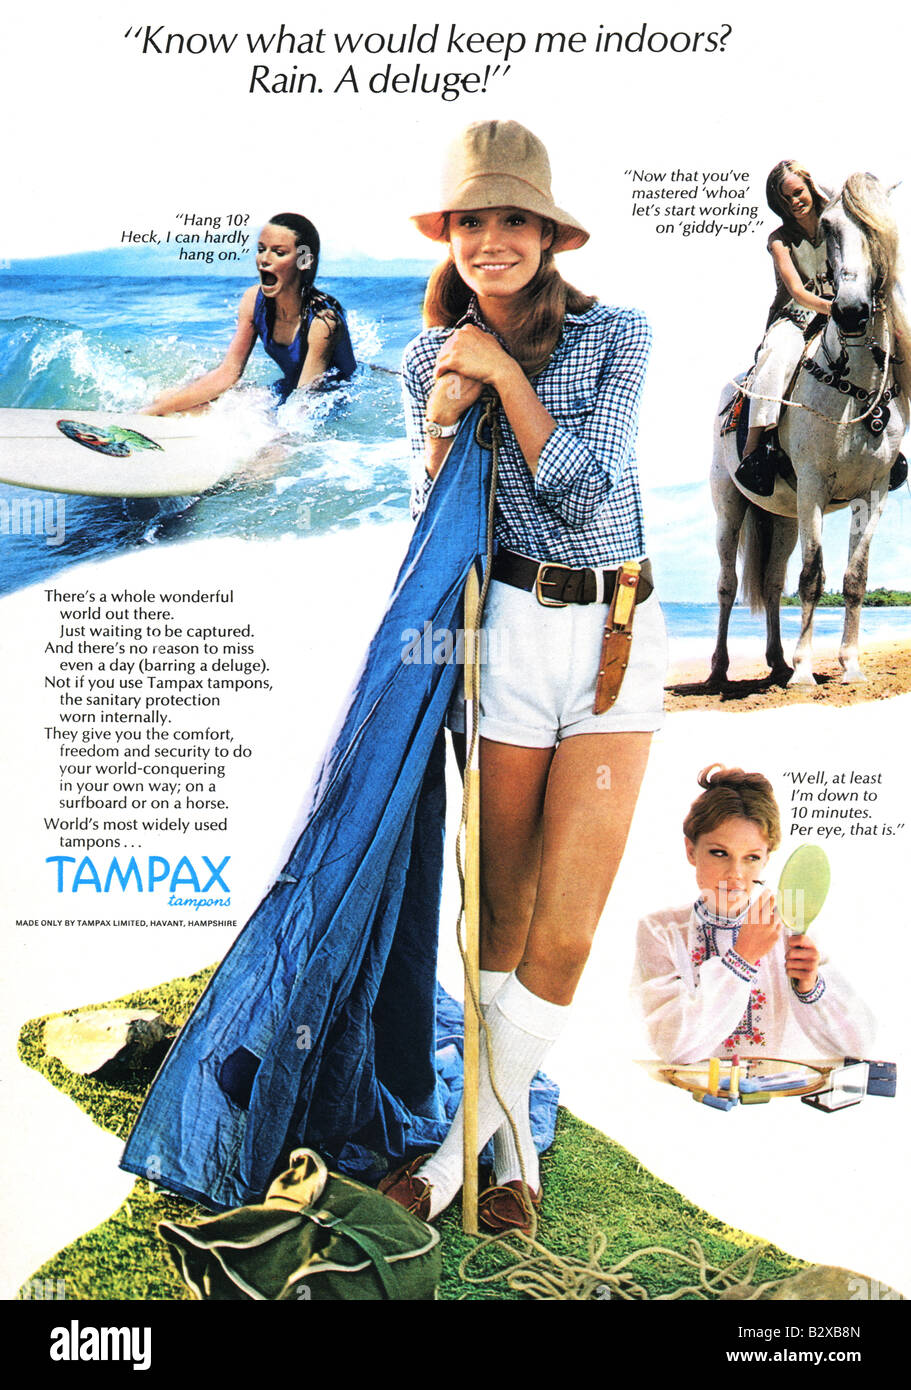 1971-Werbung für Tampax Tampons. NUR ZU REDAKTIONELLEN ZWECKEN  Stockfotografie - Alamy